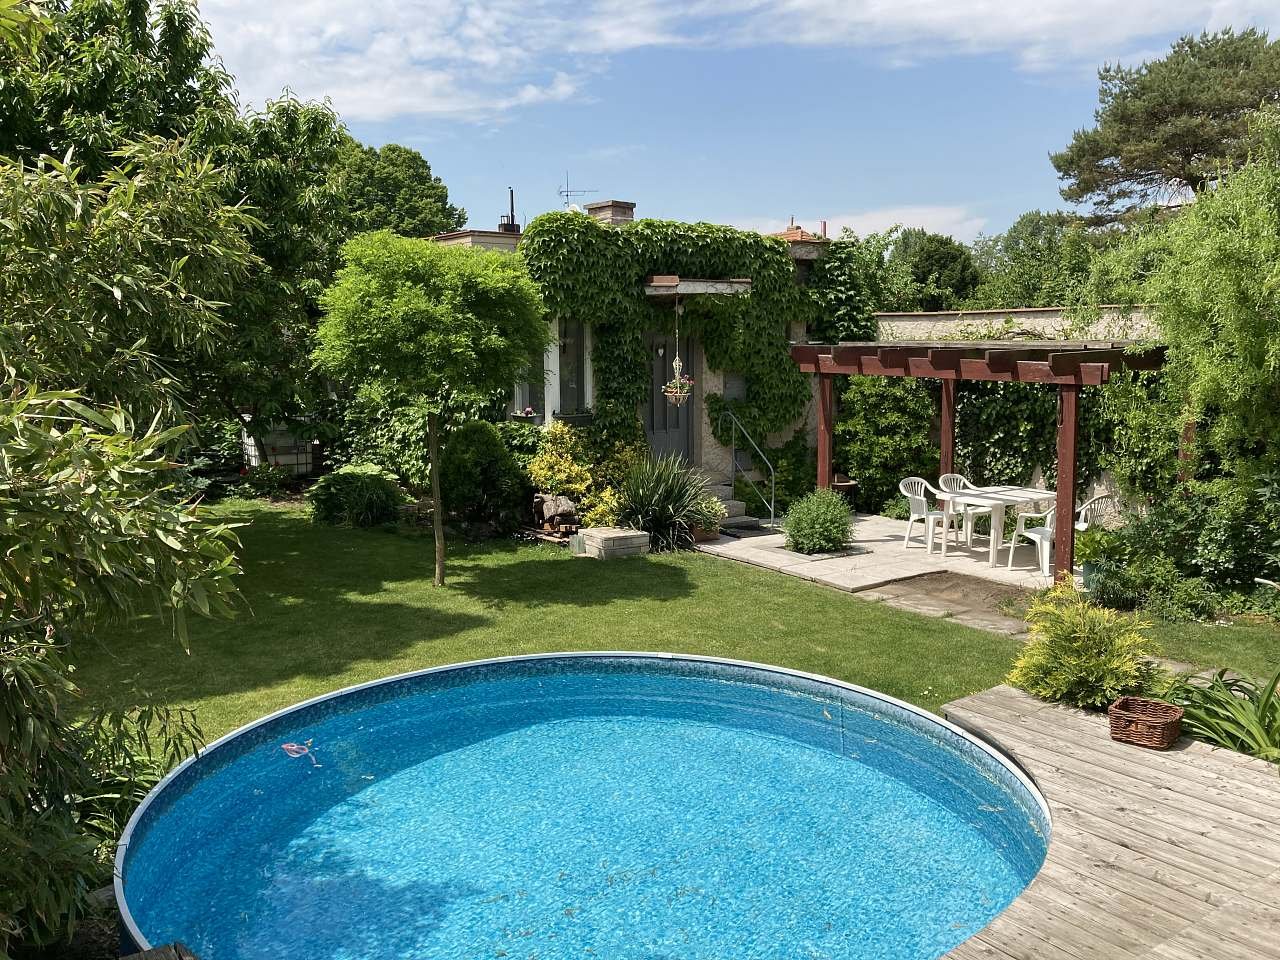 Een klein zwembad in de tuin met een appartement en een open pergola